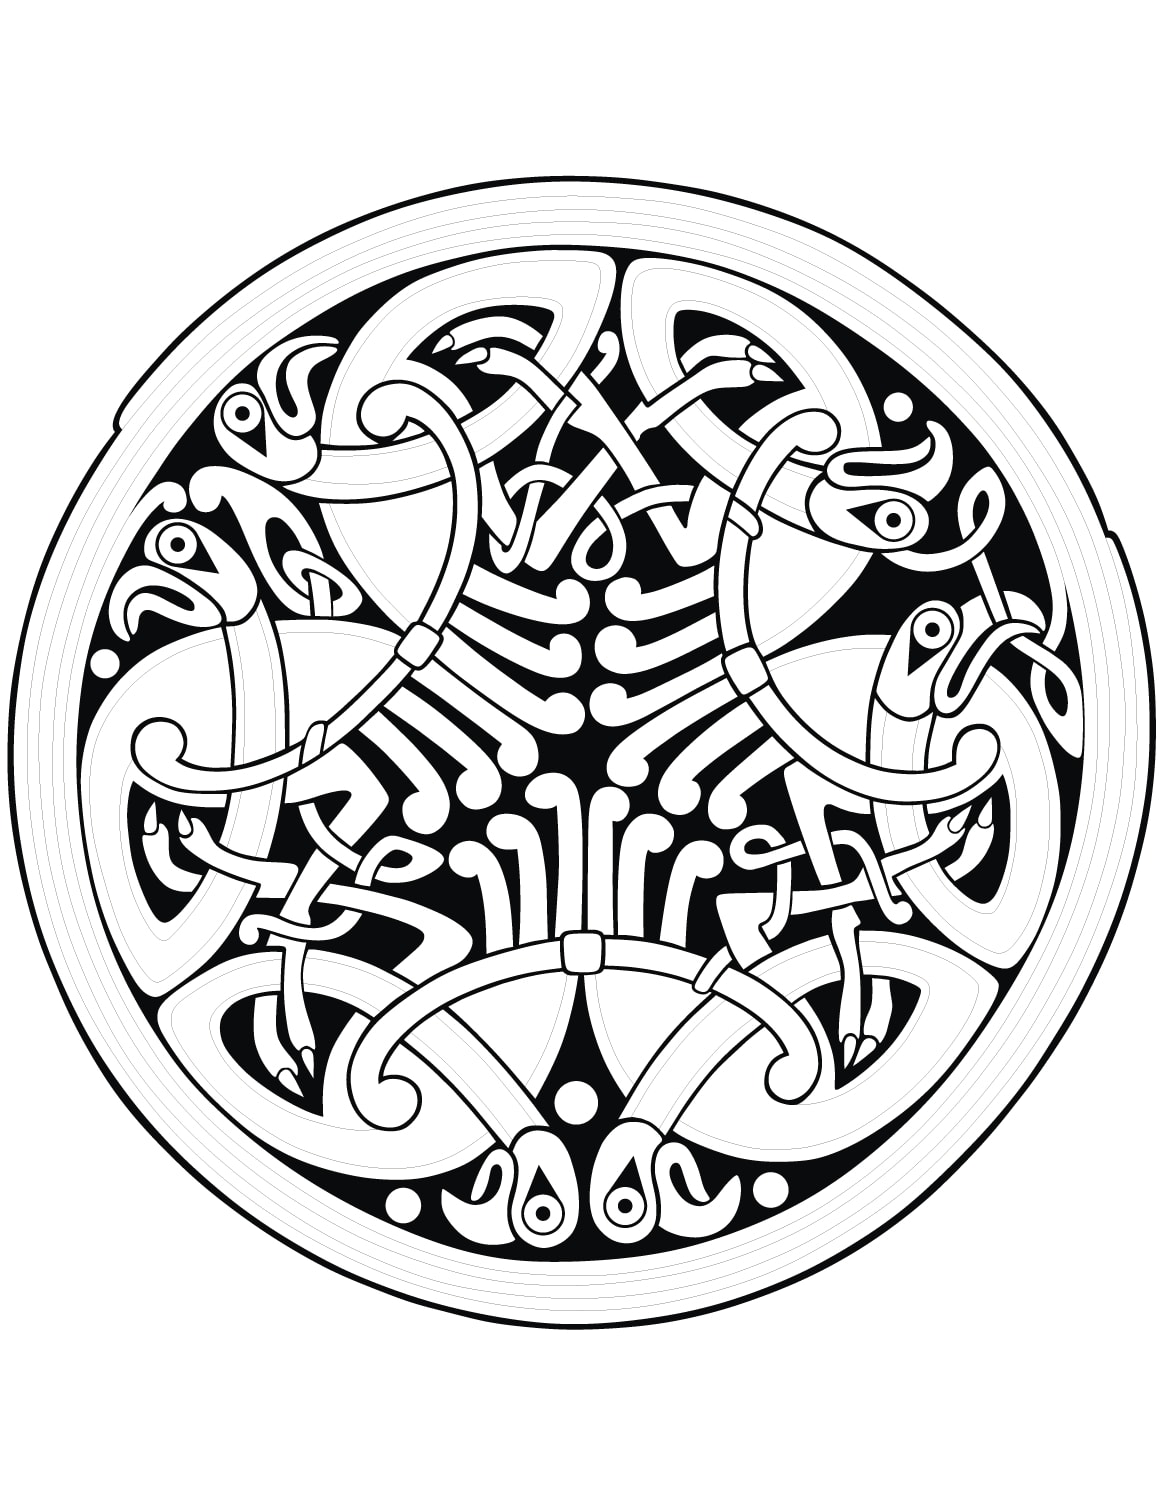 Un mandala con forme celtiche fuori dal comune, per divertirsi a colorare senza doversi preoccupare troppo di colorare le aree più piccole.